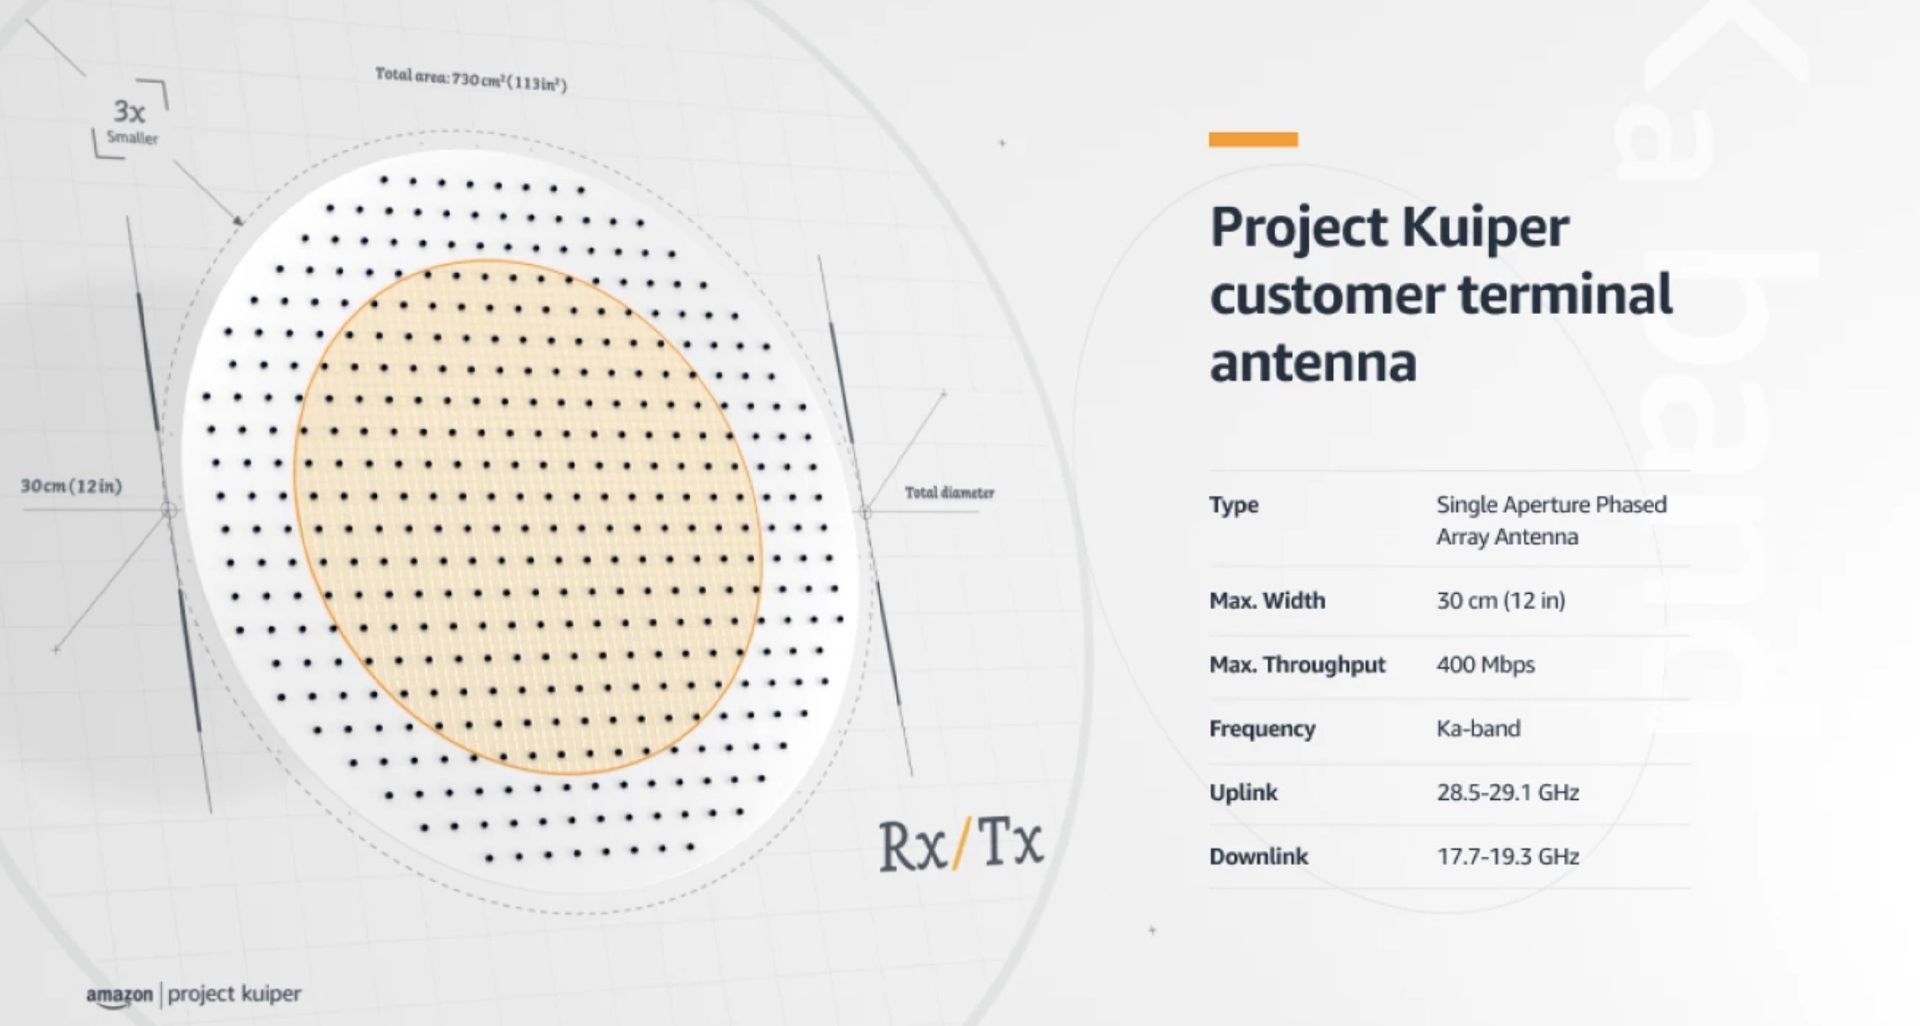 جزئیات و مشخصات دیش پایانه زمینی پروژه کویپر / Project Kuiper آمازون